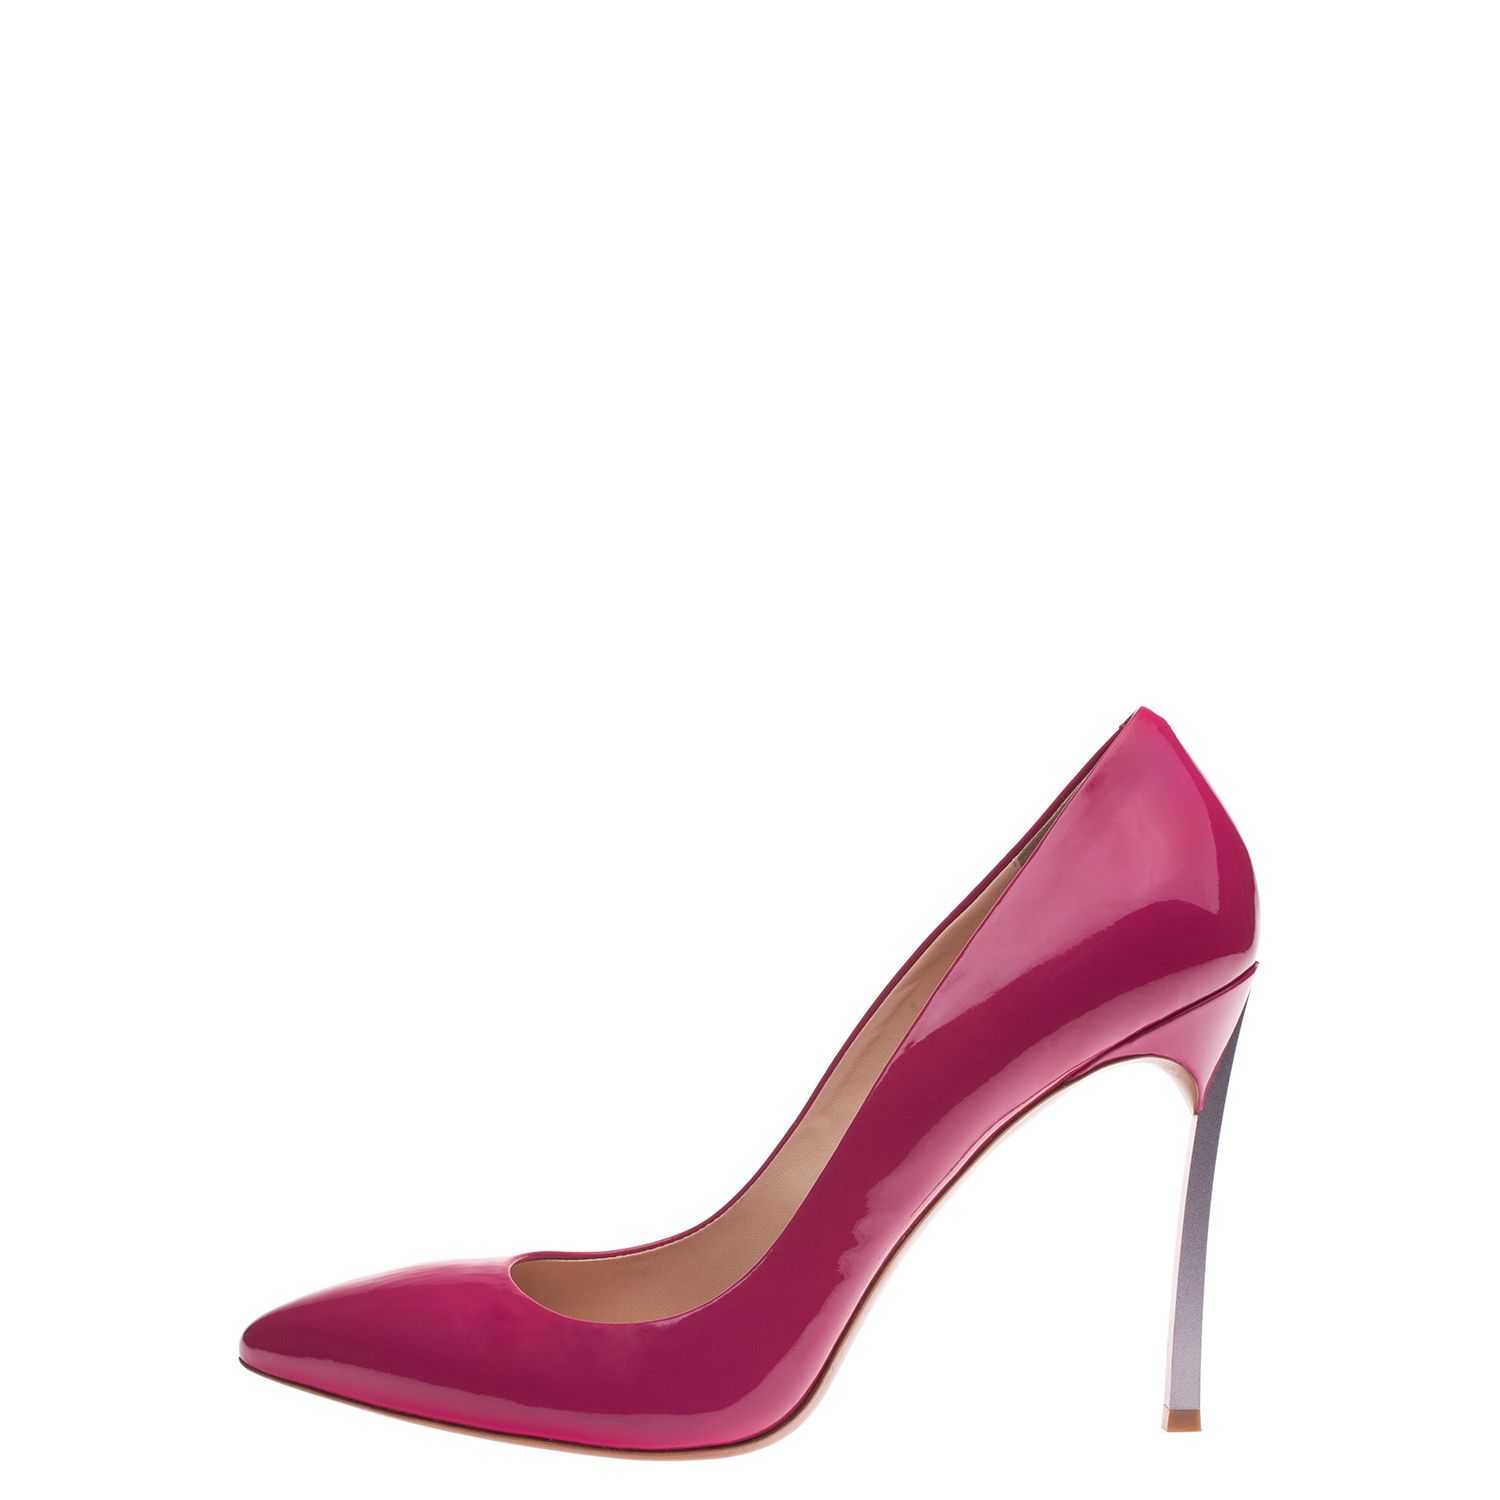 Scarpe di lusso vs lowcost: Casadei e Carlo Pazolini - Shoeplay Fashion  blog di scarpe da donna